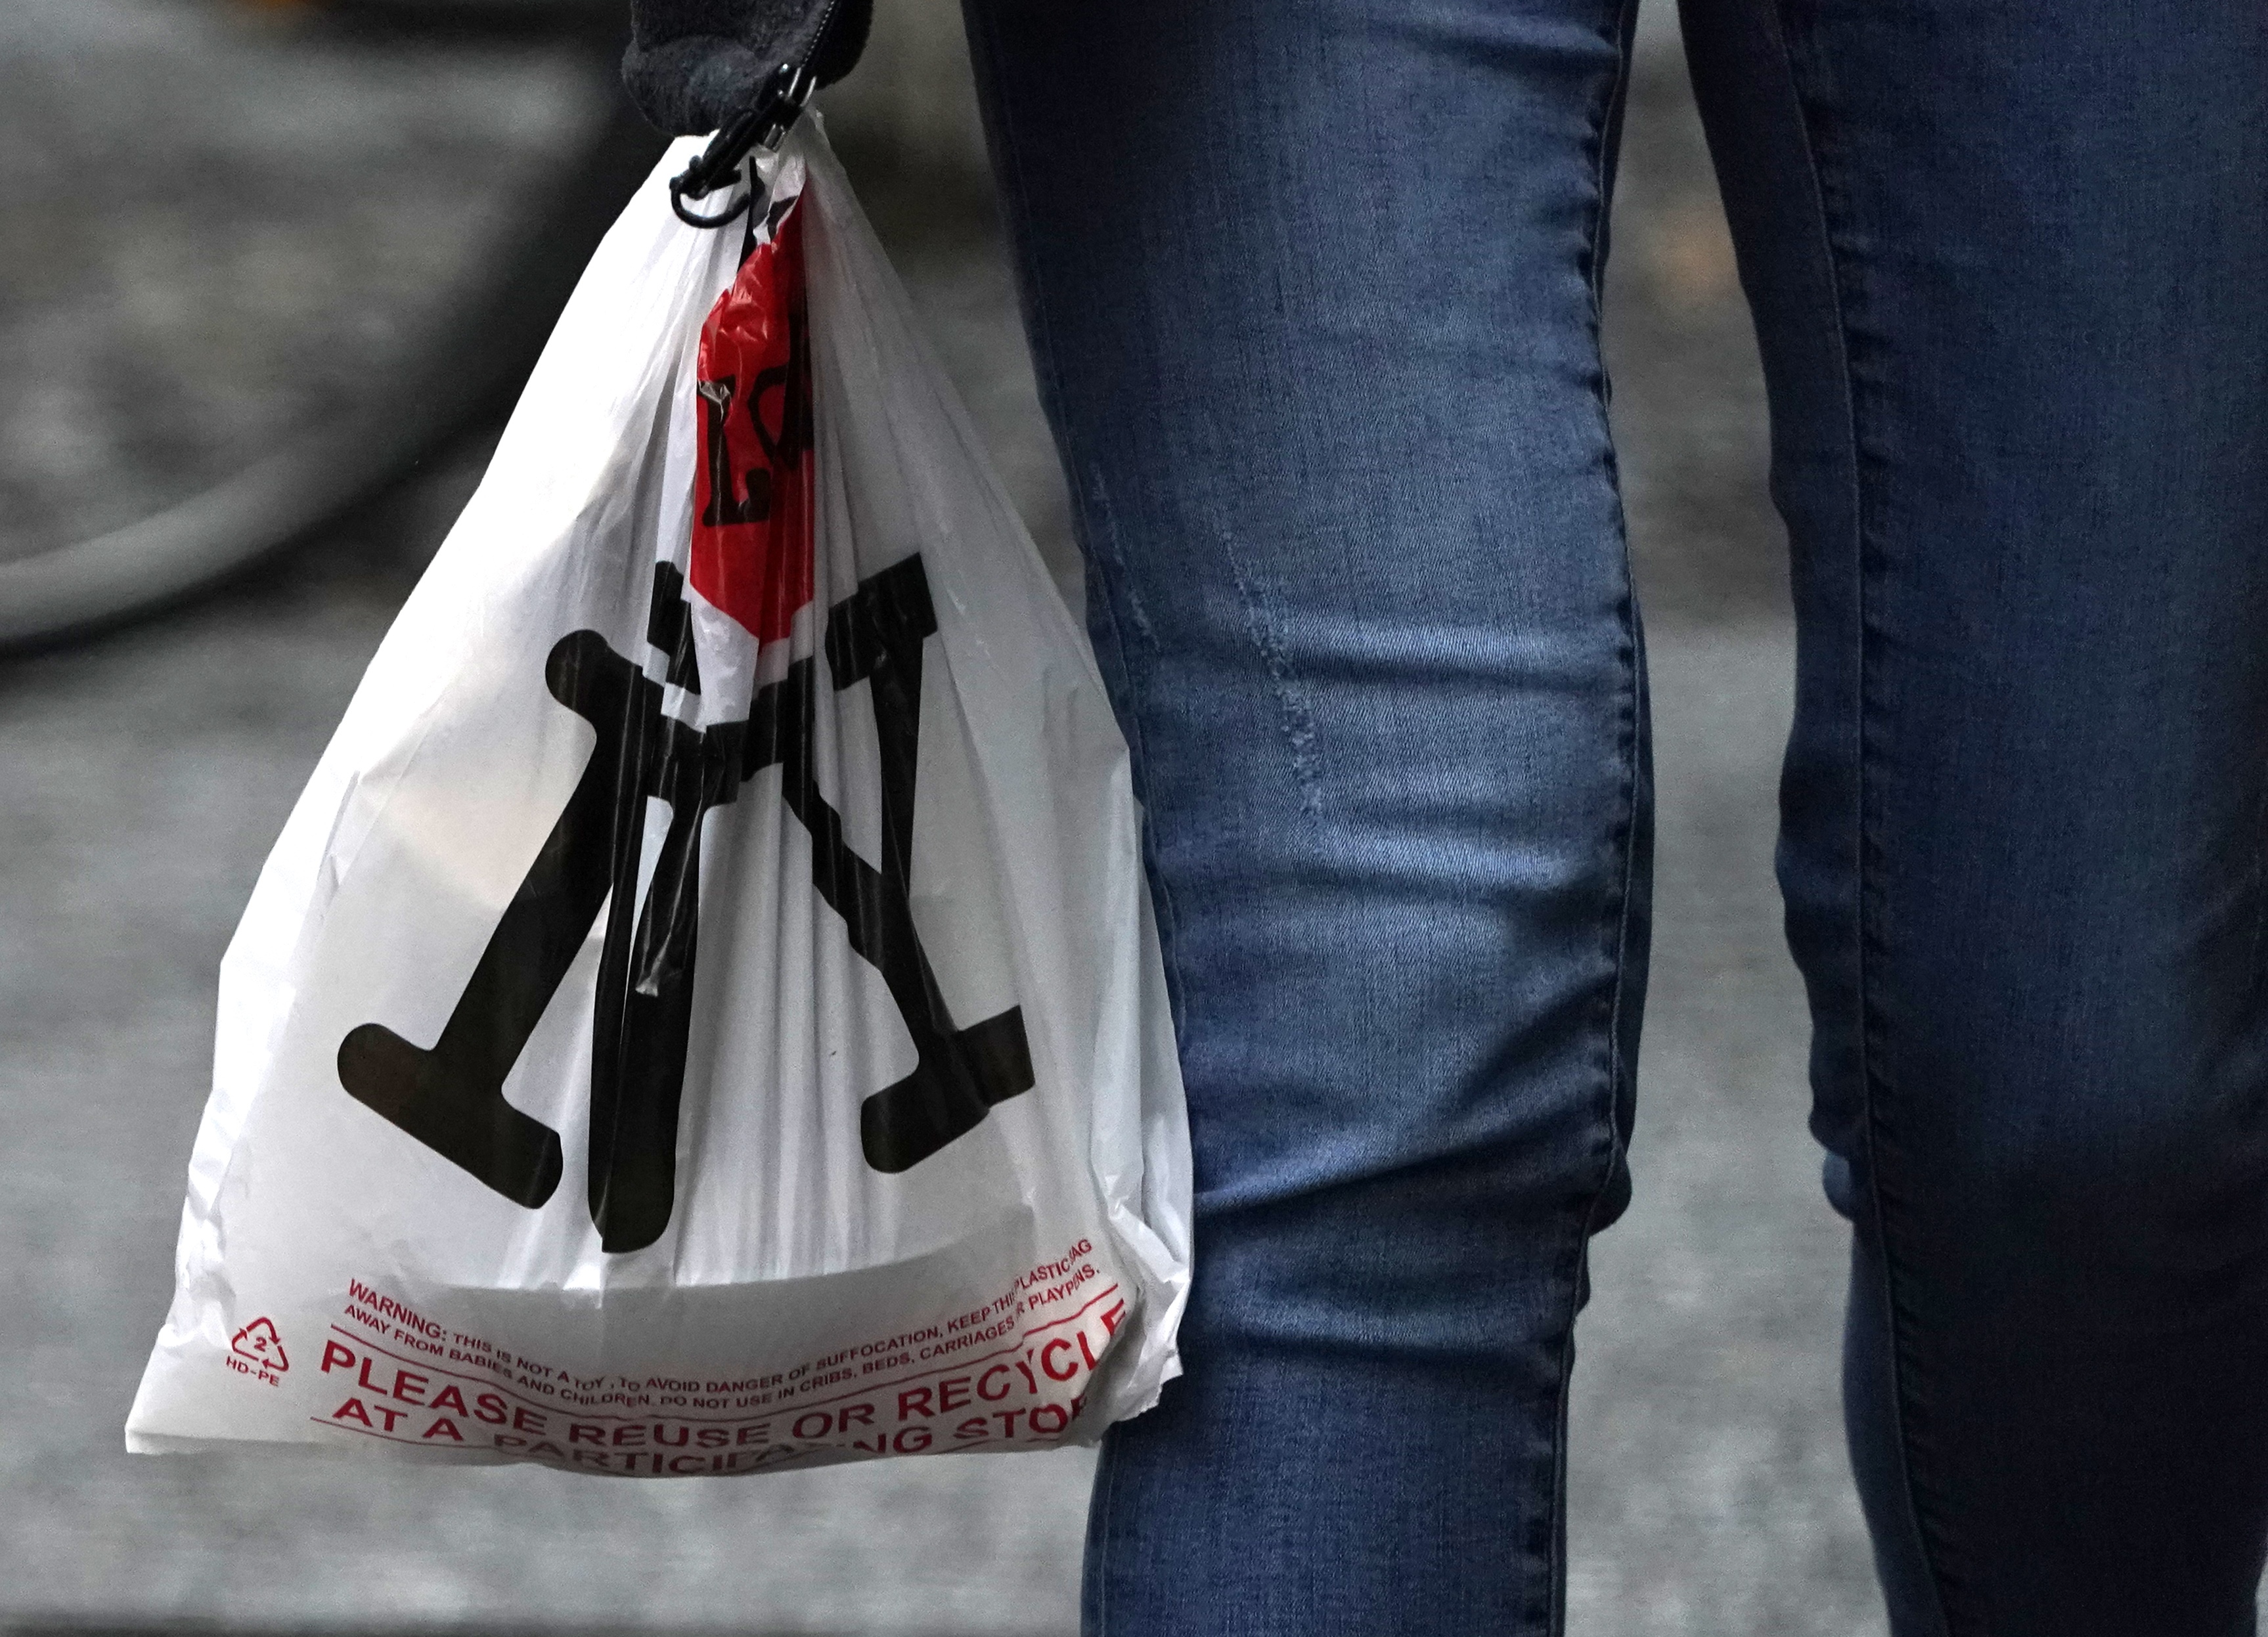 塑料袋禁令实行五个月 新州议员考虑修法